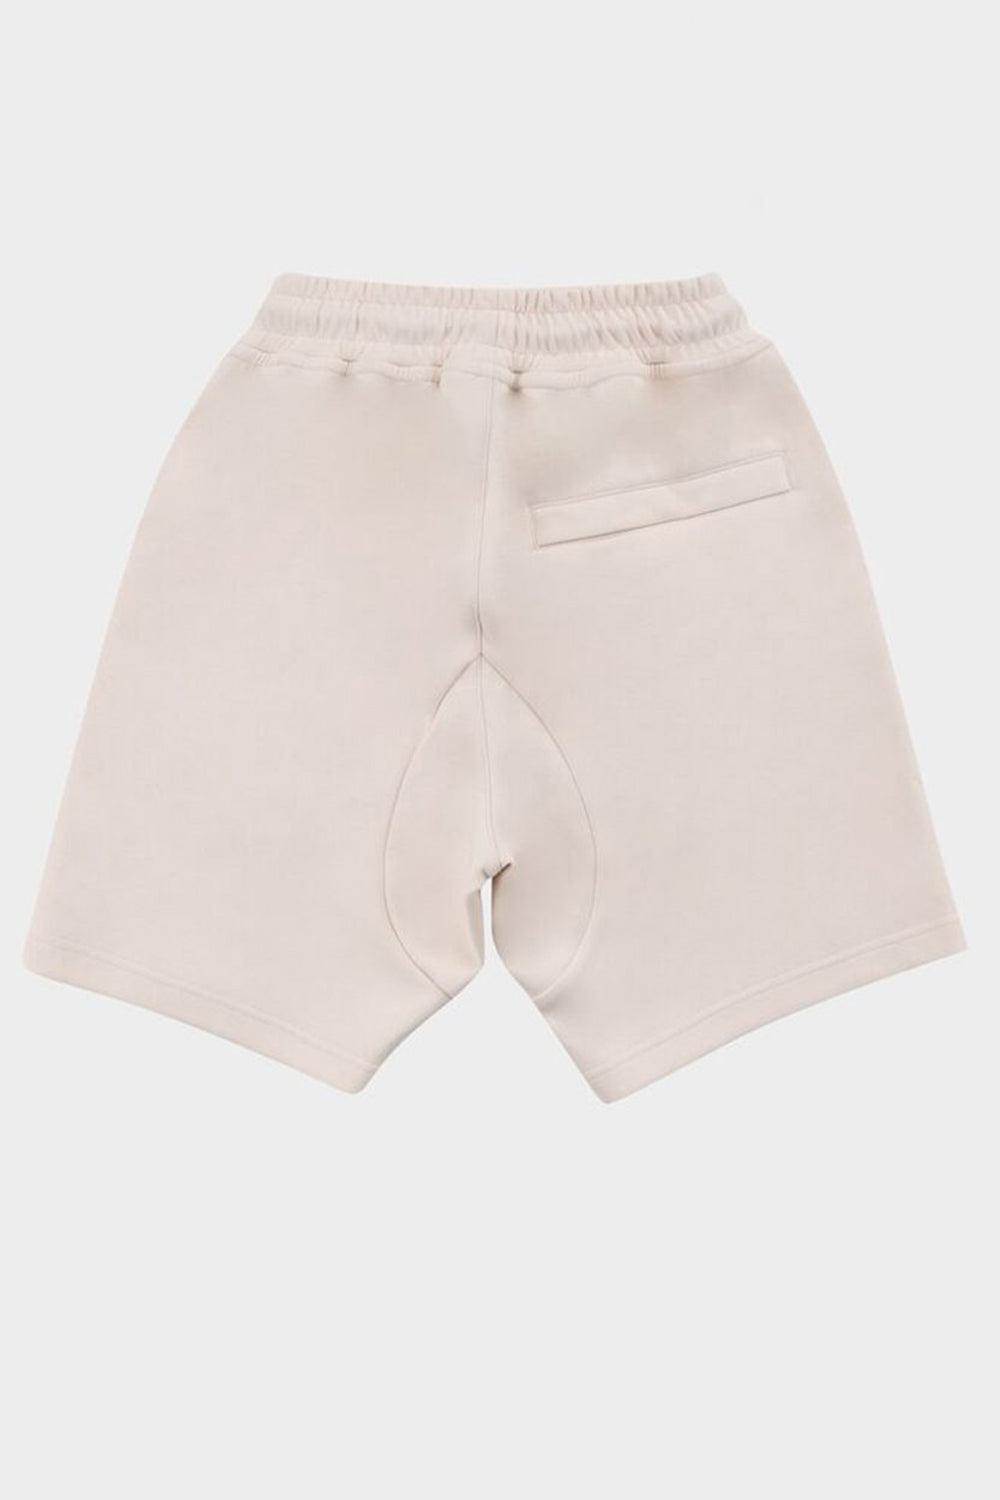 מכנסיים קצרים לגברים לוגו BALR Vendome online | ונדום .